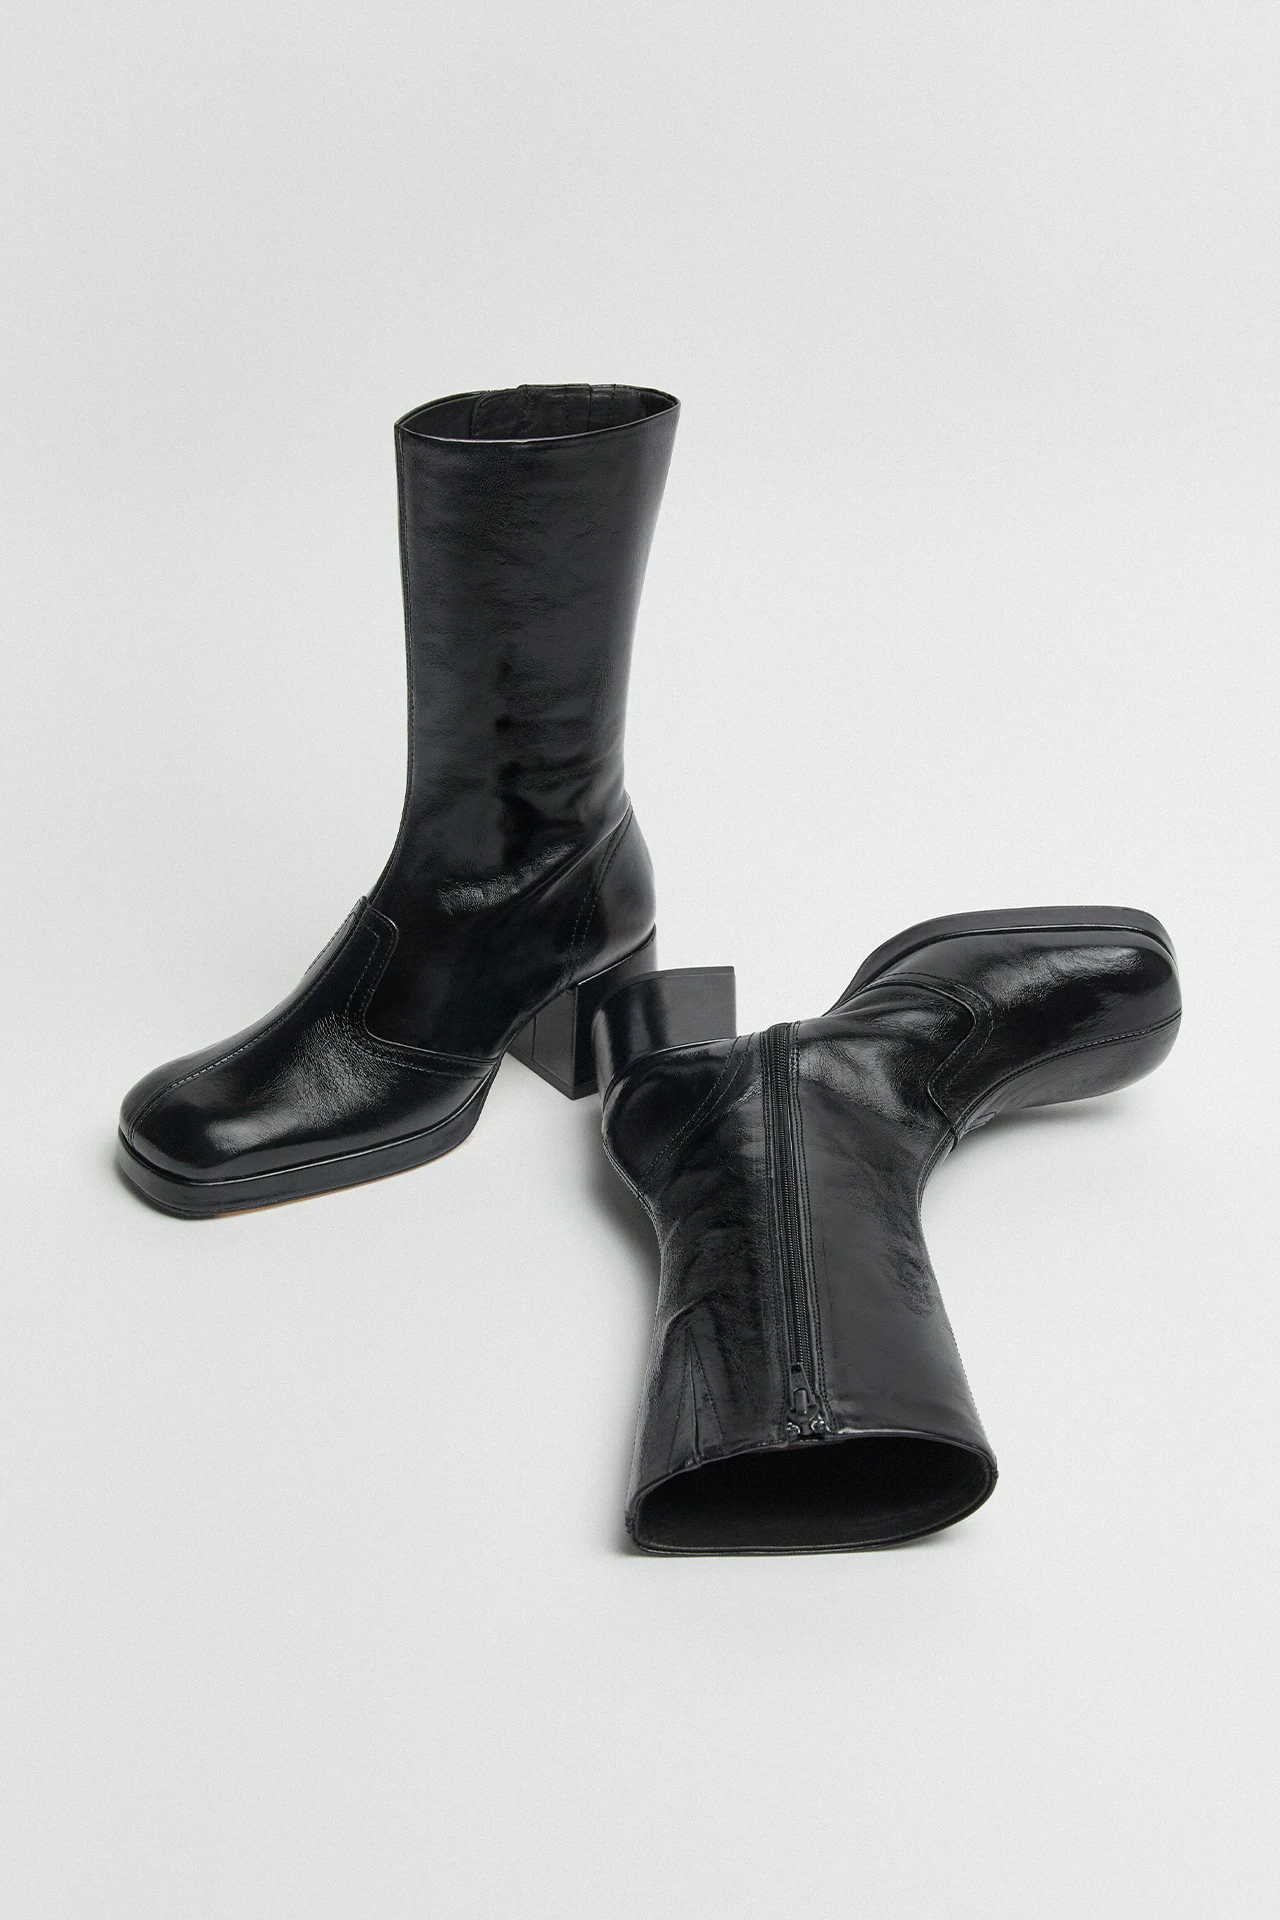 Miista-cass-black-crinkle-boots-02